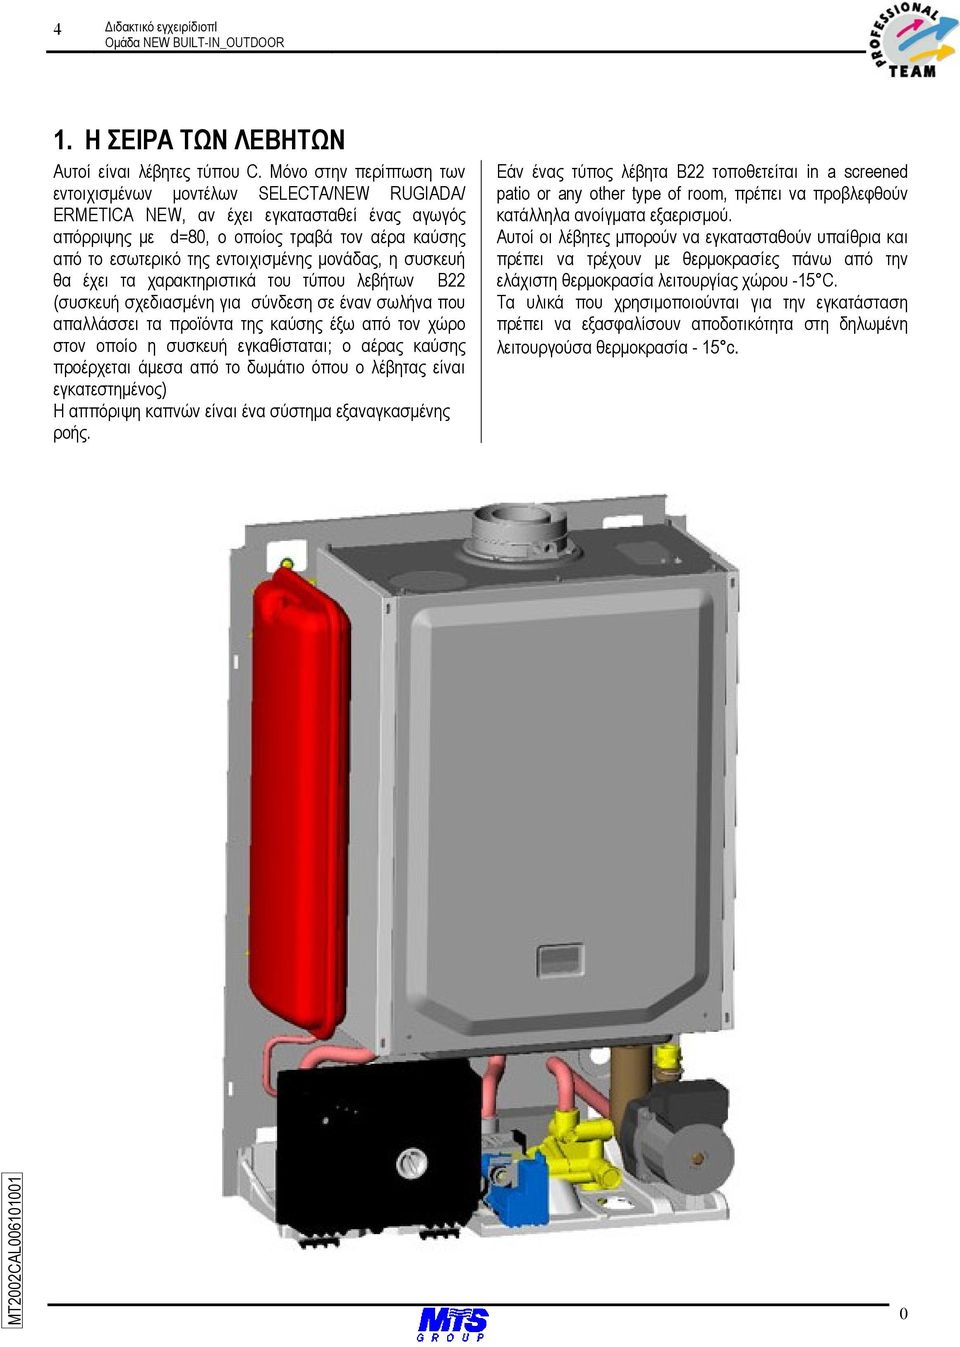 µονάδας, η συσκευή θα έχει τα χαρακτηριστικά του τύπου λεβήτων B22 (συσκευή σχεδιασµένη για σύνδεση σε έναν σωλήνα που απαλλάσσει τα προϊόντα της καύσης έξω από τον χώρο στον οποίο η συσκευή